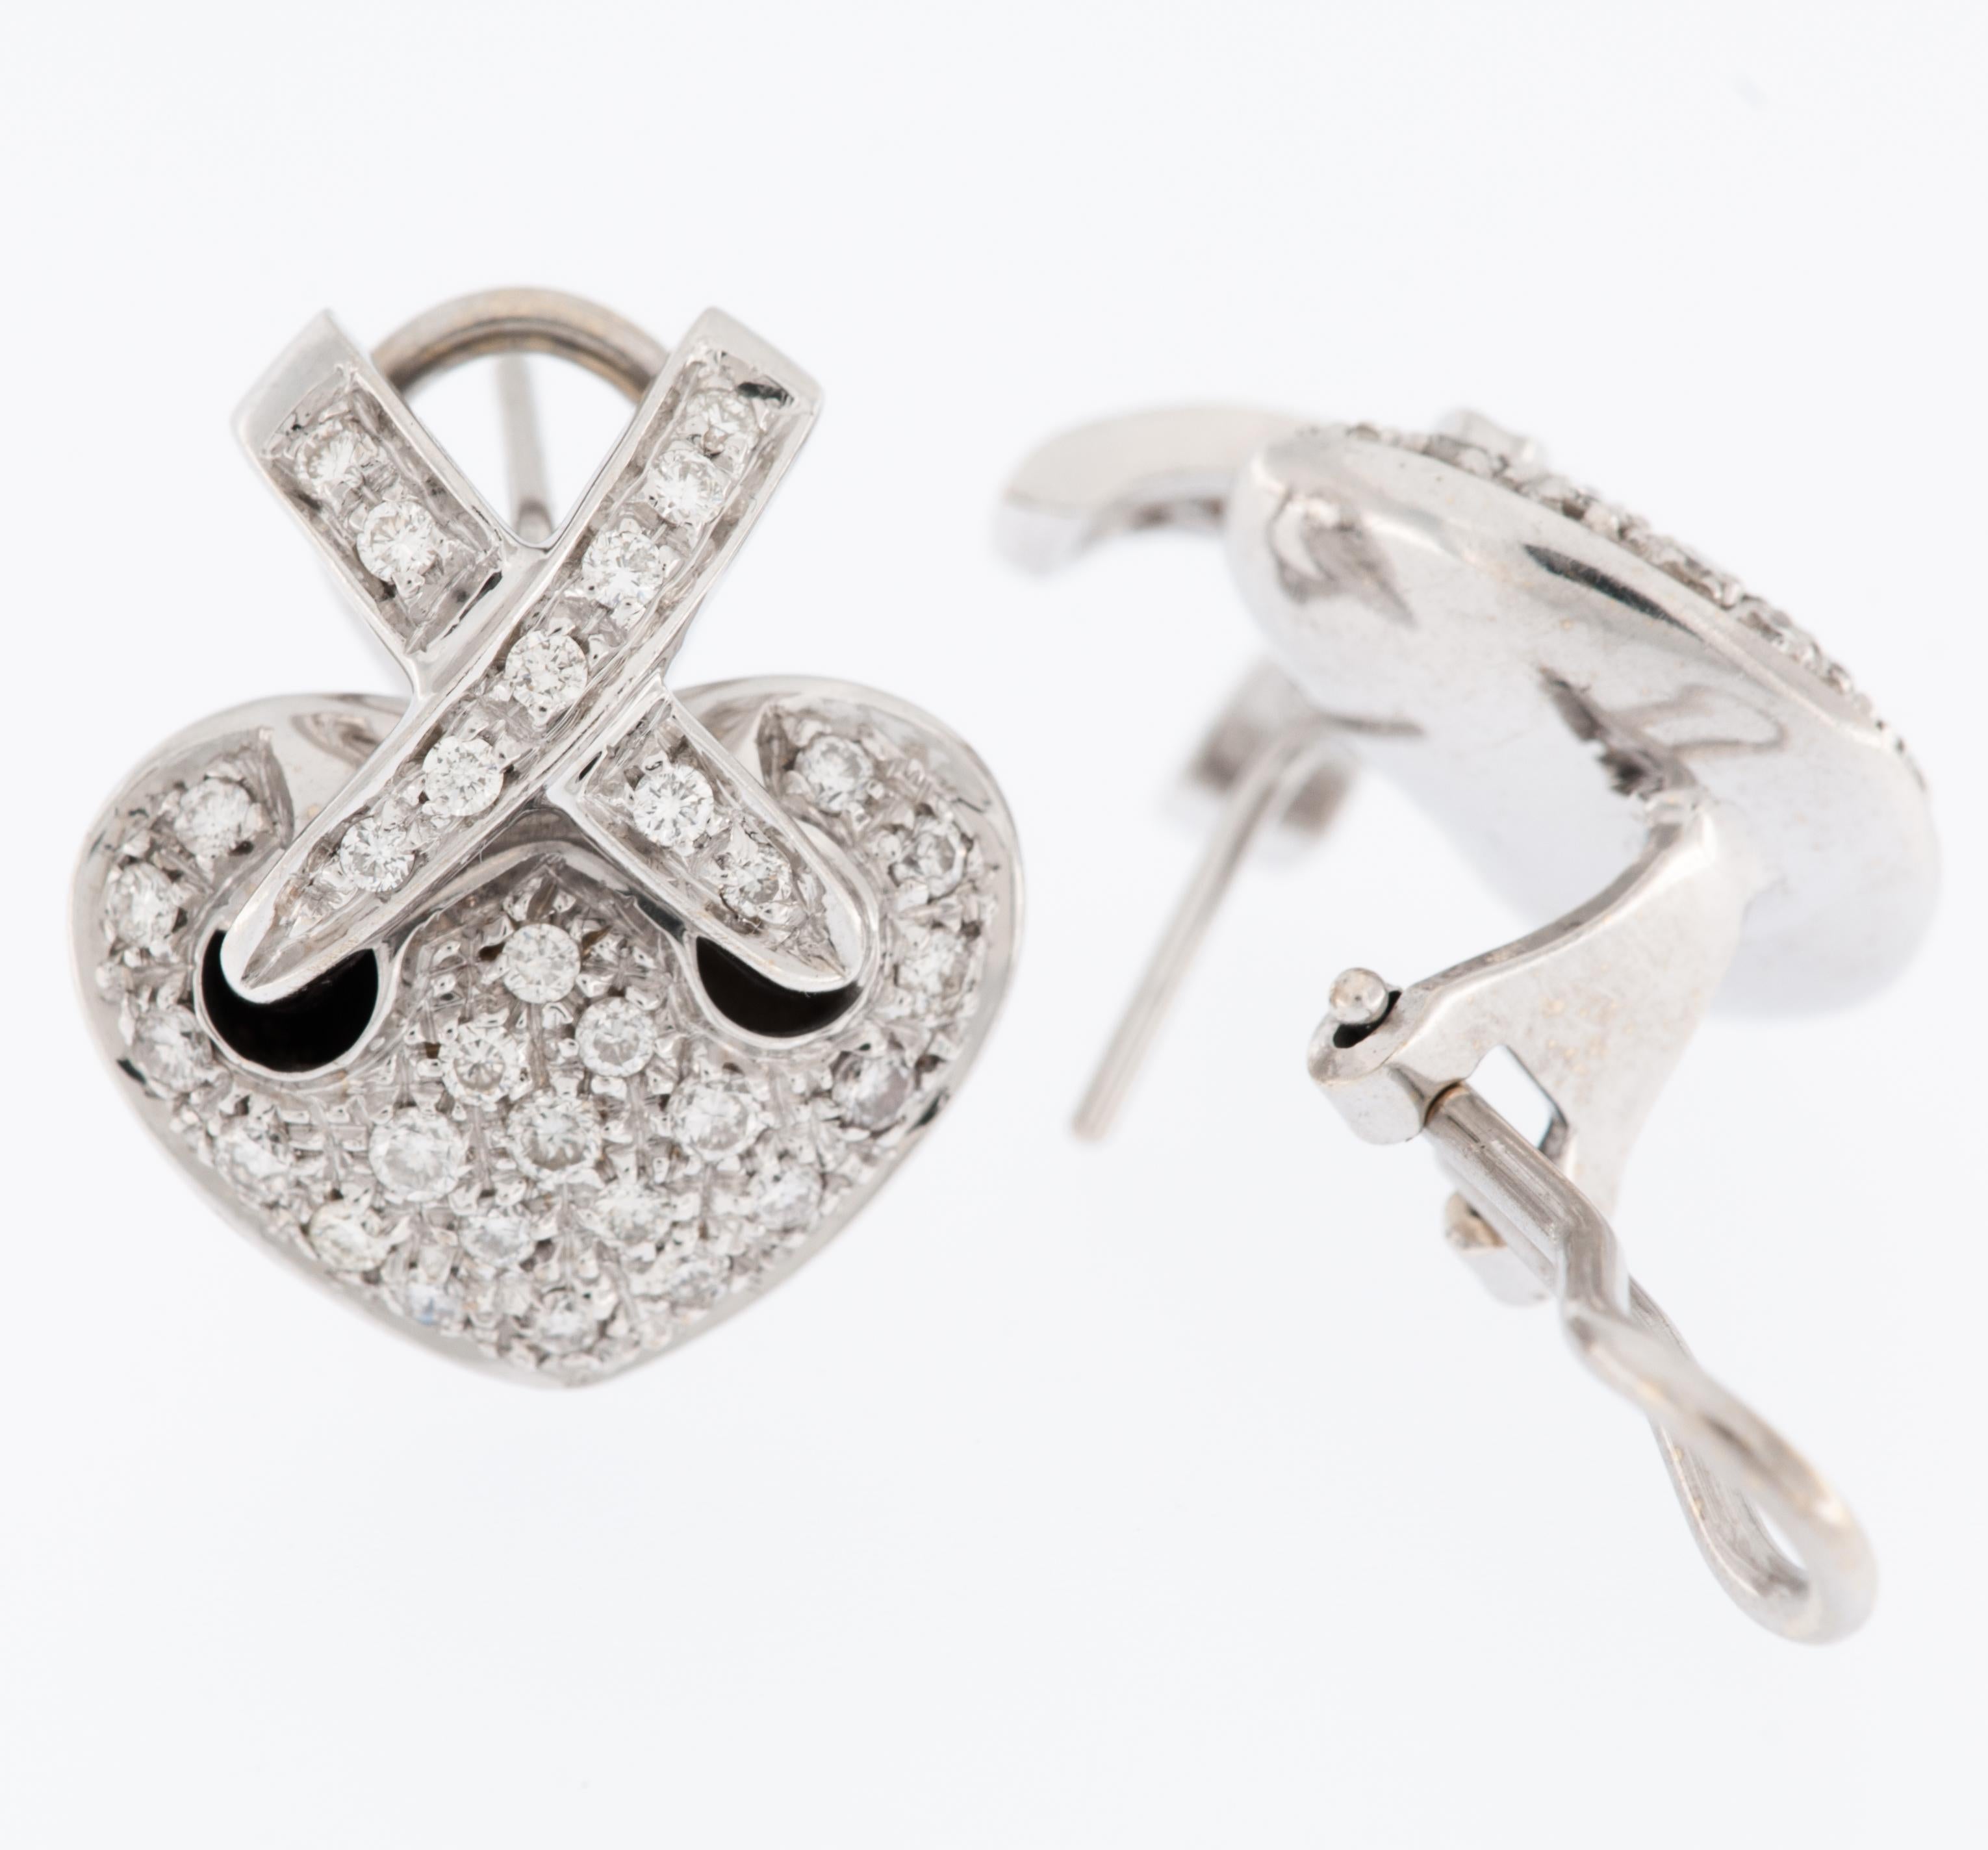 Les boucles d'oreilles cœur en or blanc 18 carats avec diamants de Chaumet Style Liens sont un magnifique exemple de joaillerie fine qui allie l'élégance à une touche de romantisme.

Les boucles d'oreilles sont en or blanc 18 carats, un choix qui